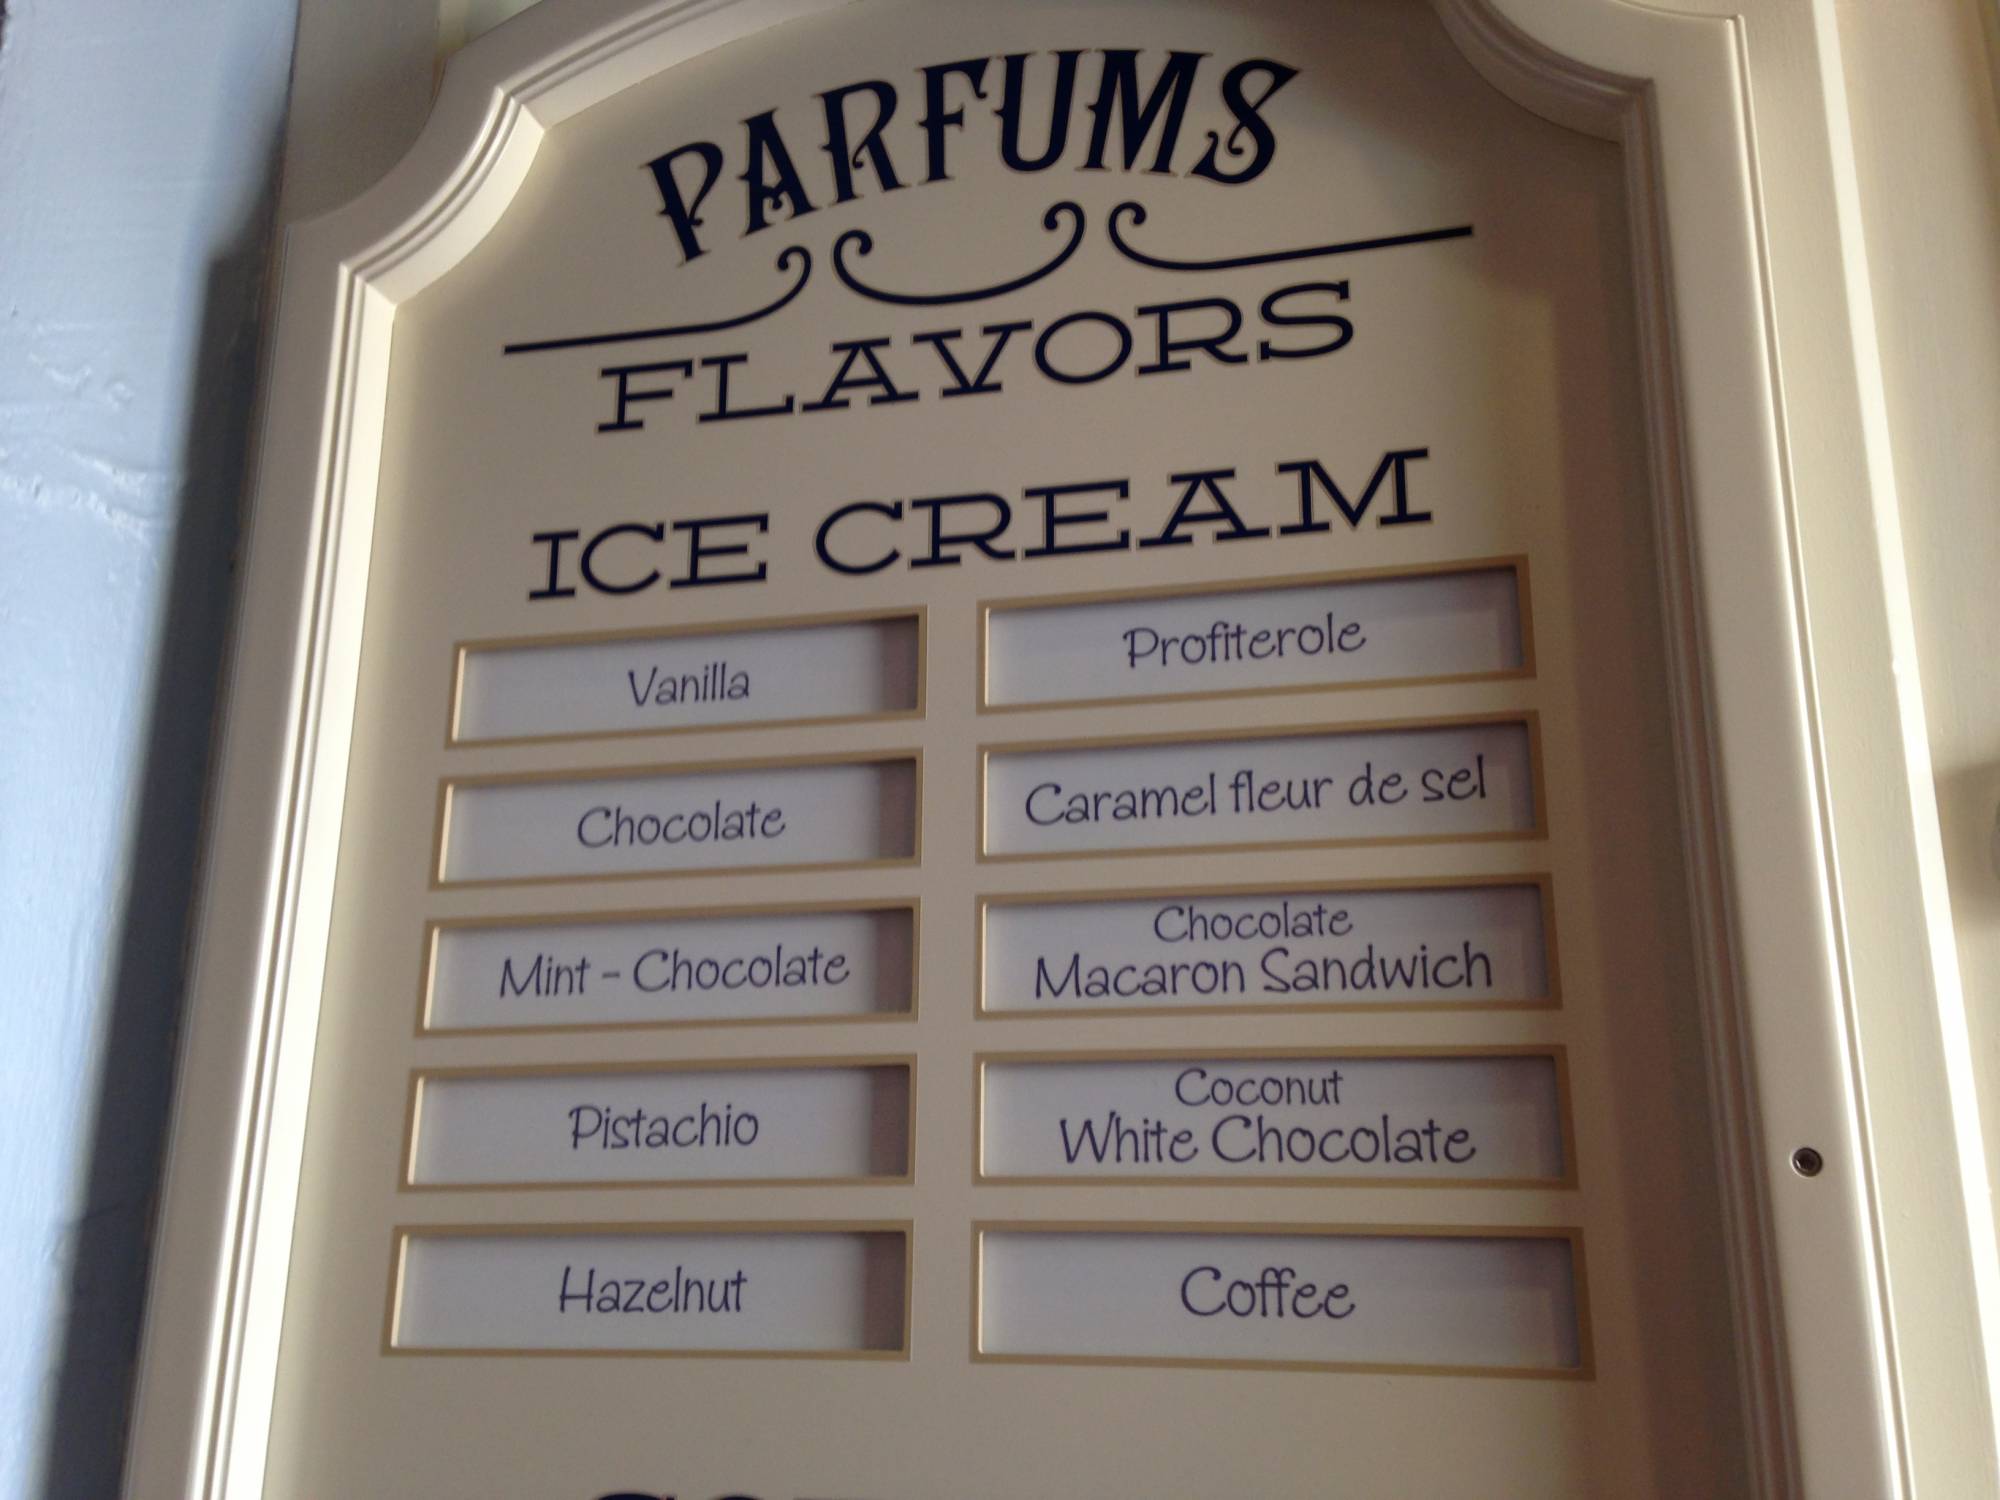 Ice Cream Flavors - Les Artisans des Glaces